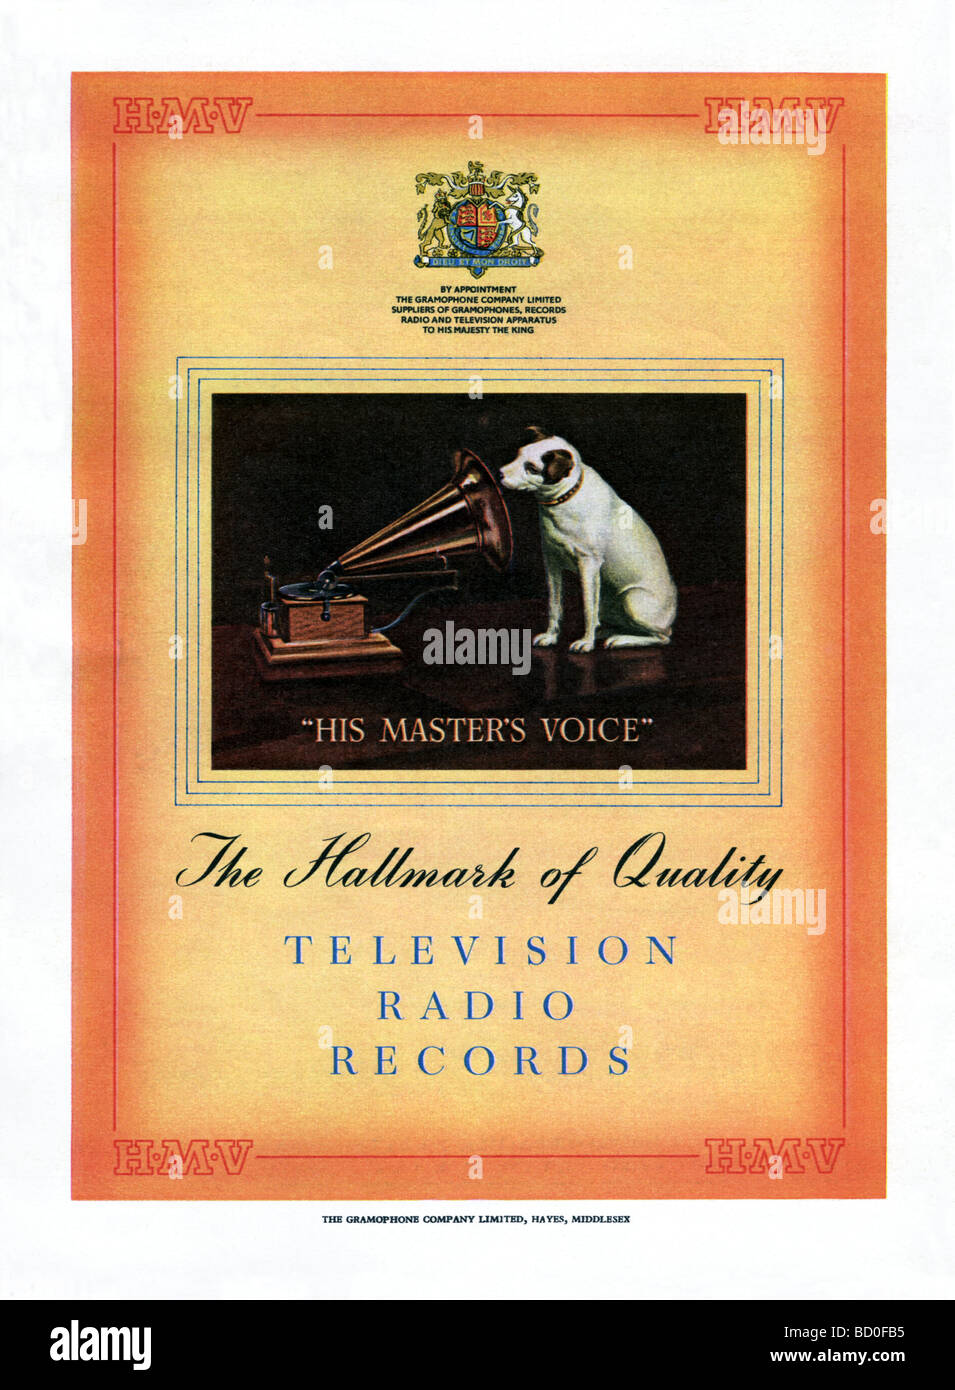 1951 pubblicità per HMV record, televisioni e radio Foto Stock